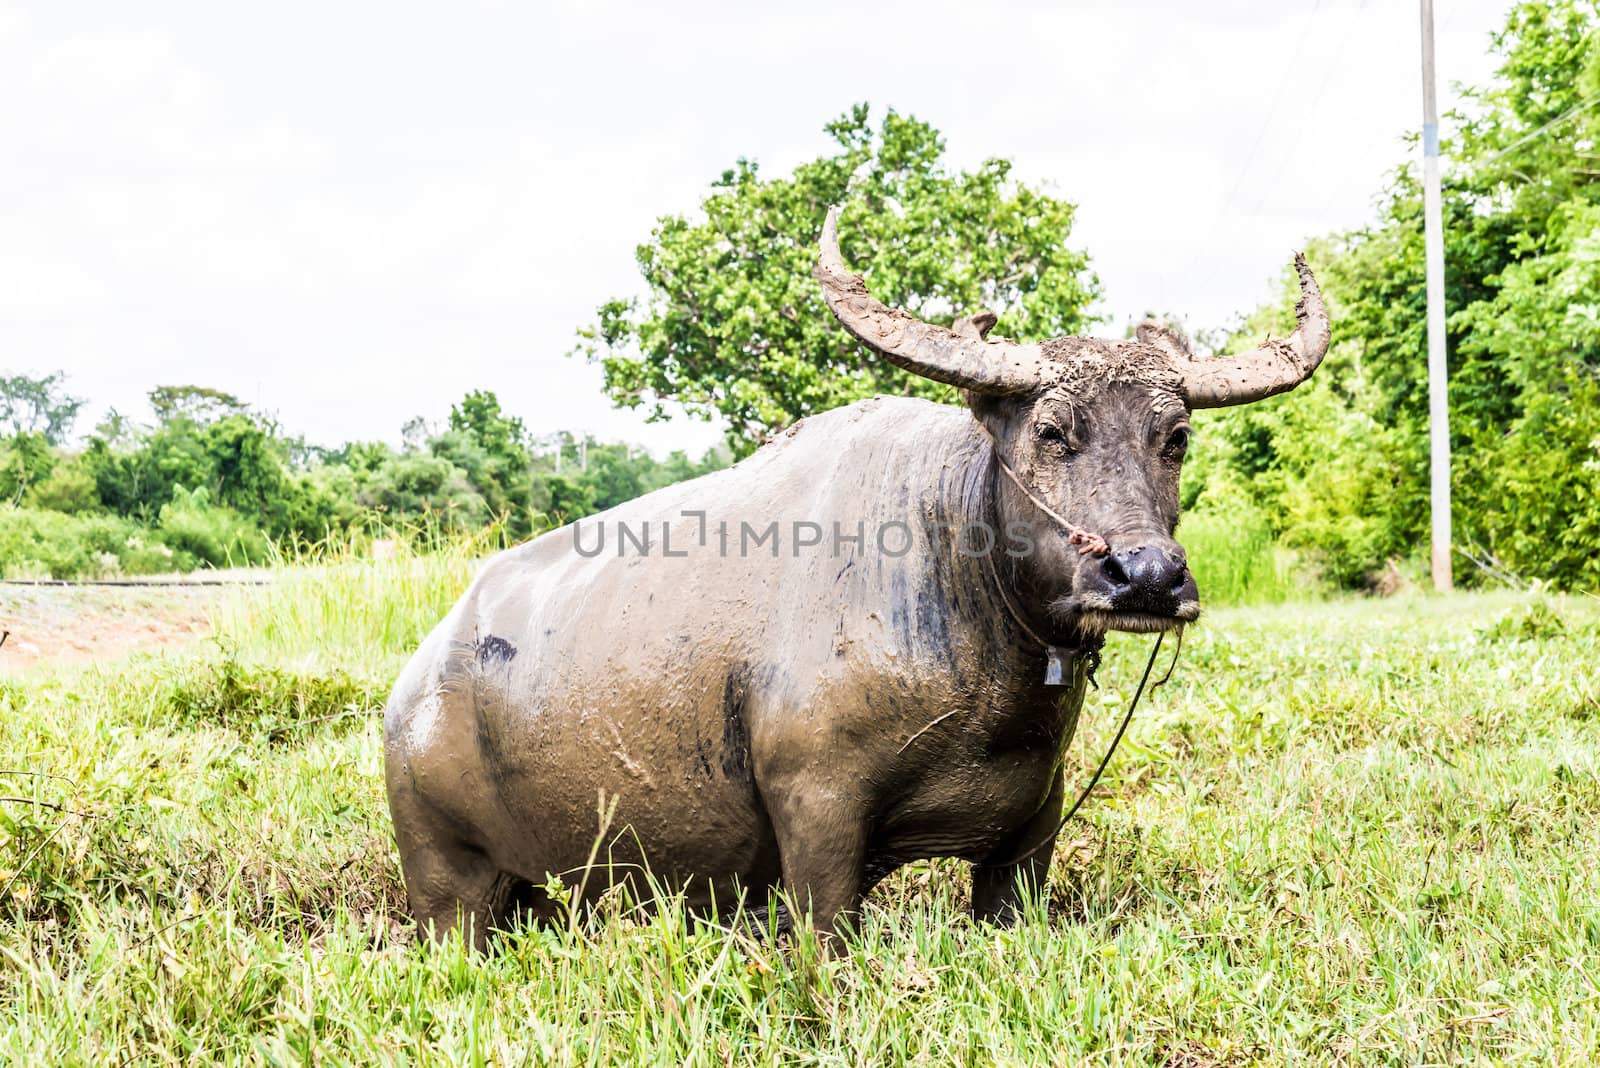 Buffalo. Buffalo calf in field, Thailand.